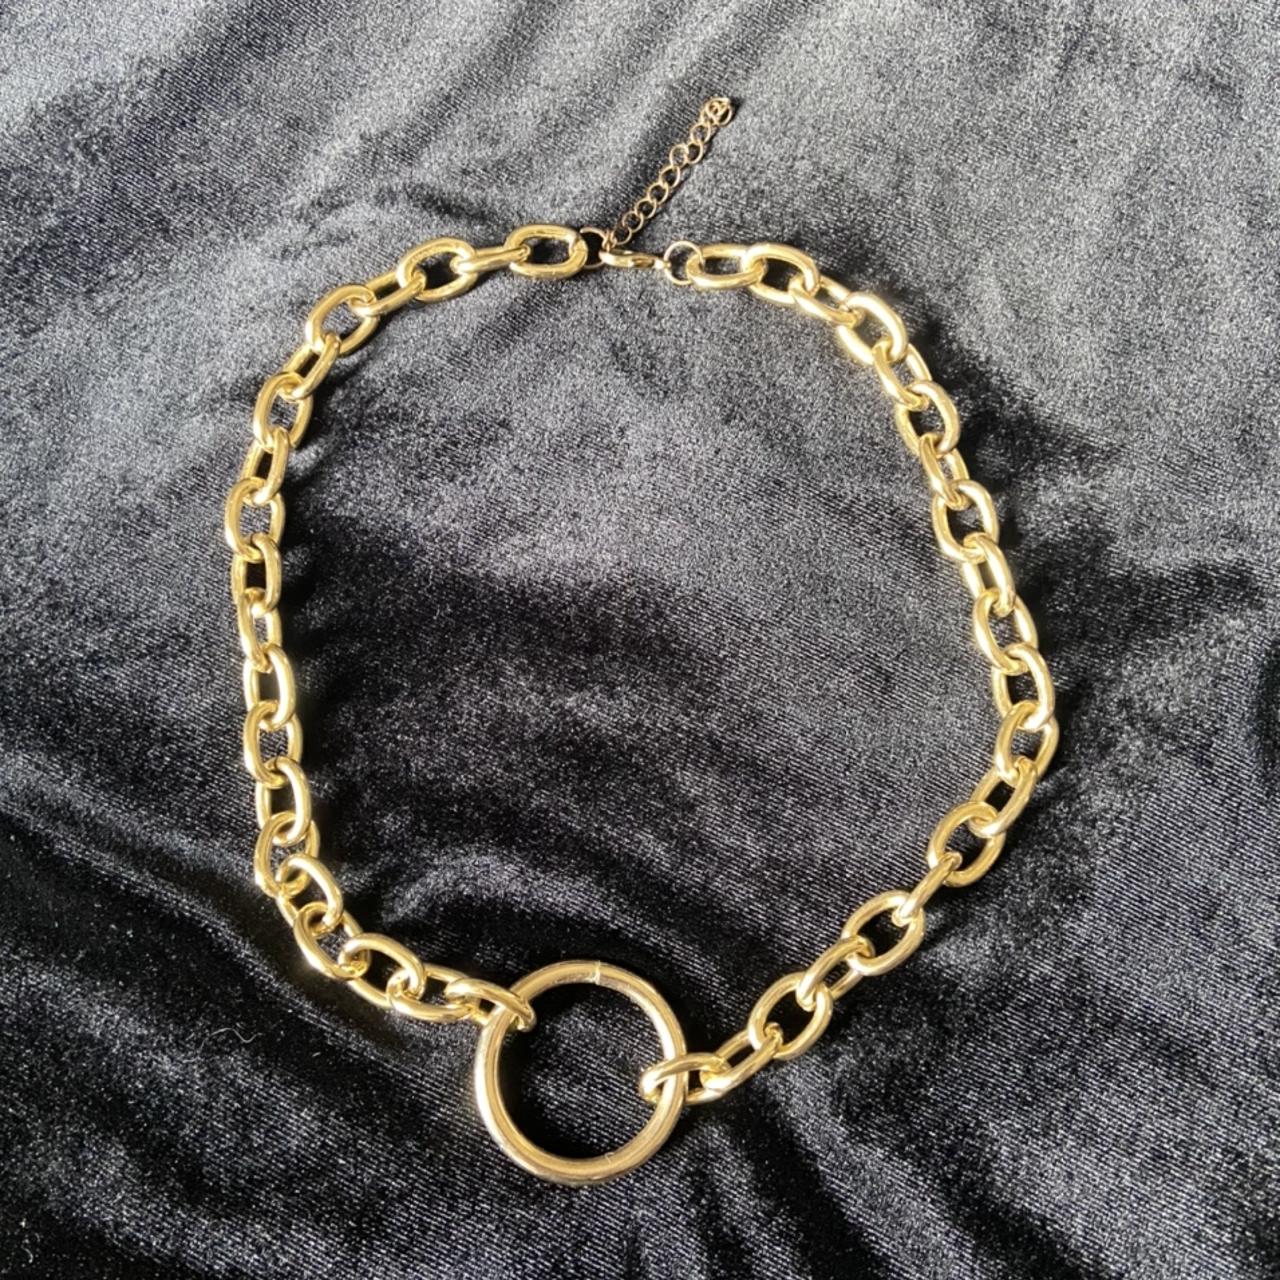 Gold o ring choker necklace. Never worn, adjustable... - Depop